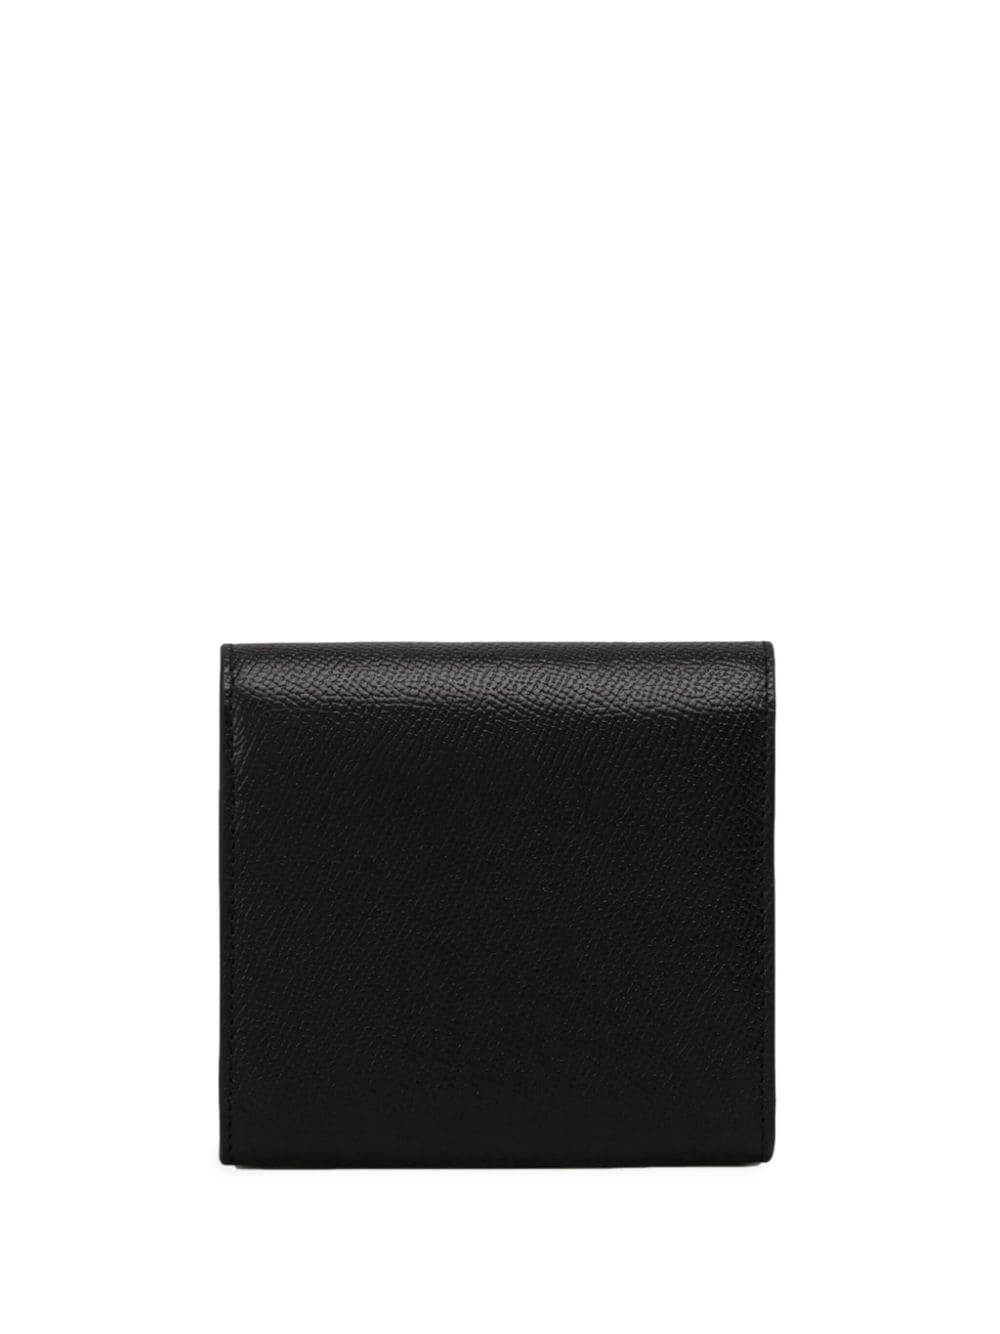 Shop Ami Alexandre Mattiussi Paris Paris Compact Leather Wallet In Black